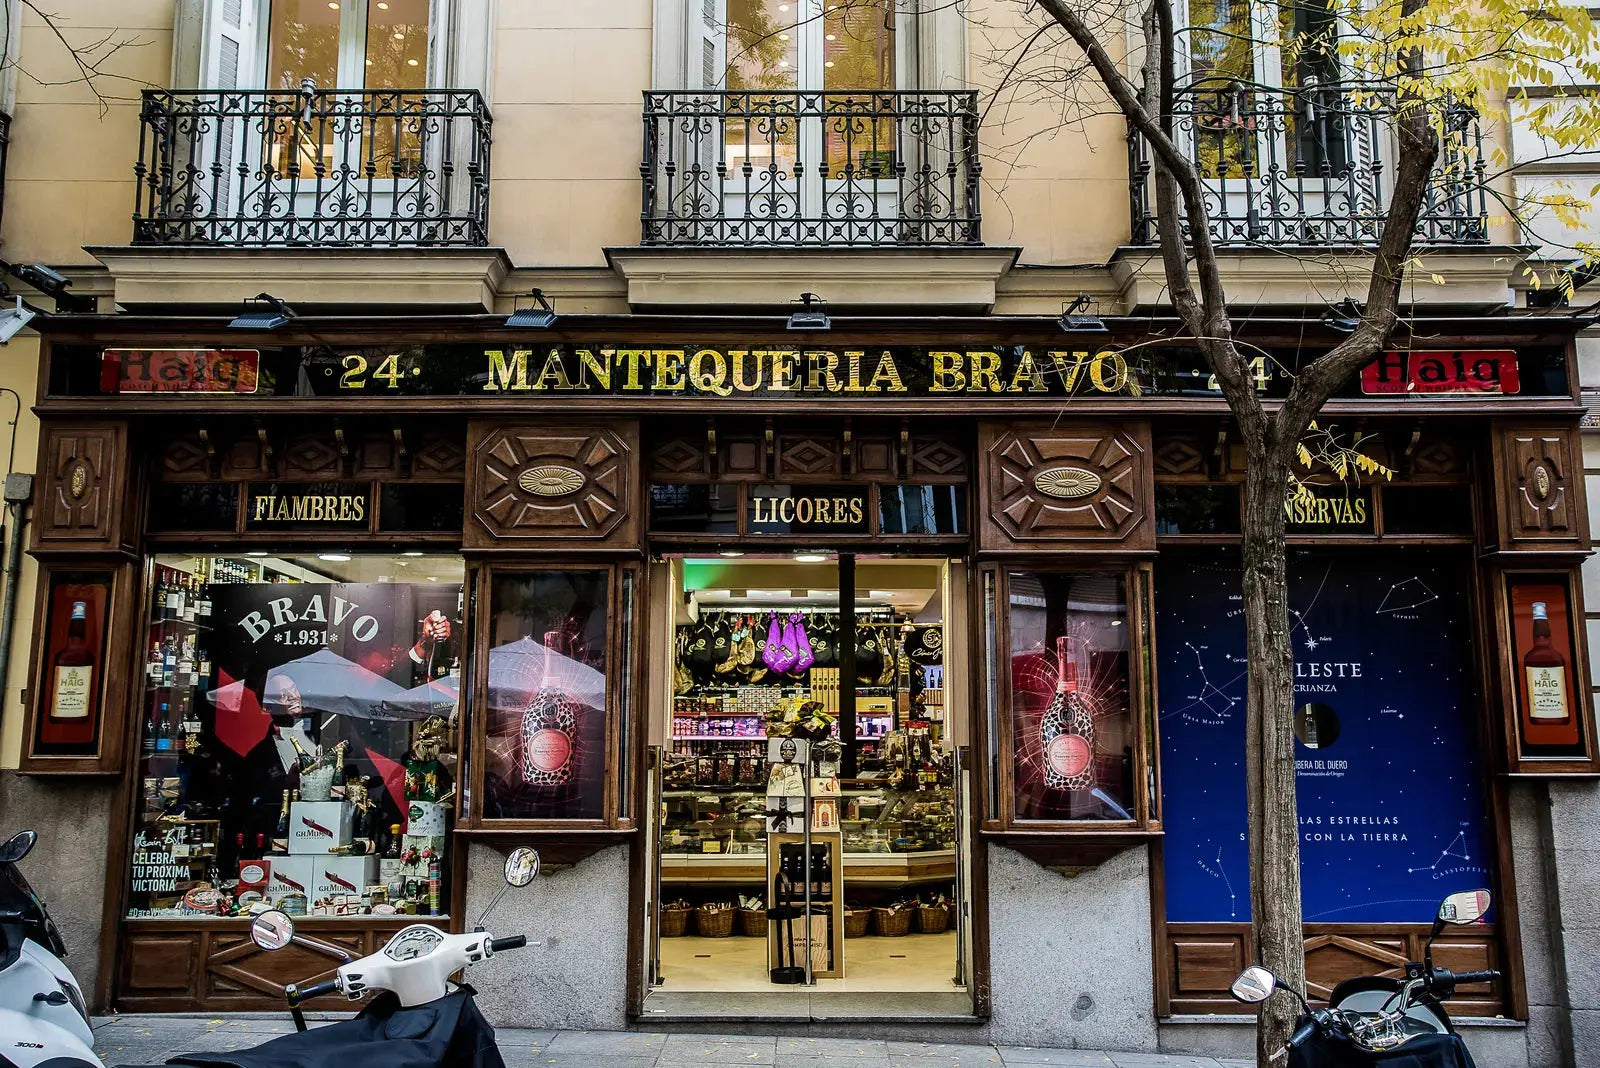 CONDÉ NAST TRAVELER | Mantequerías Bravo: la tienda gourmet favorita de los madrileños (desde 1931)